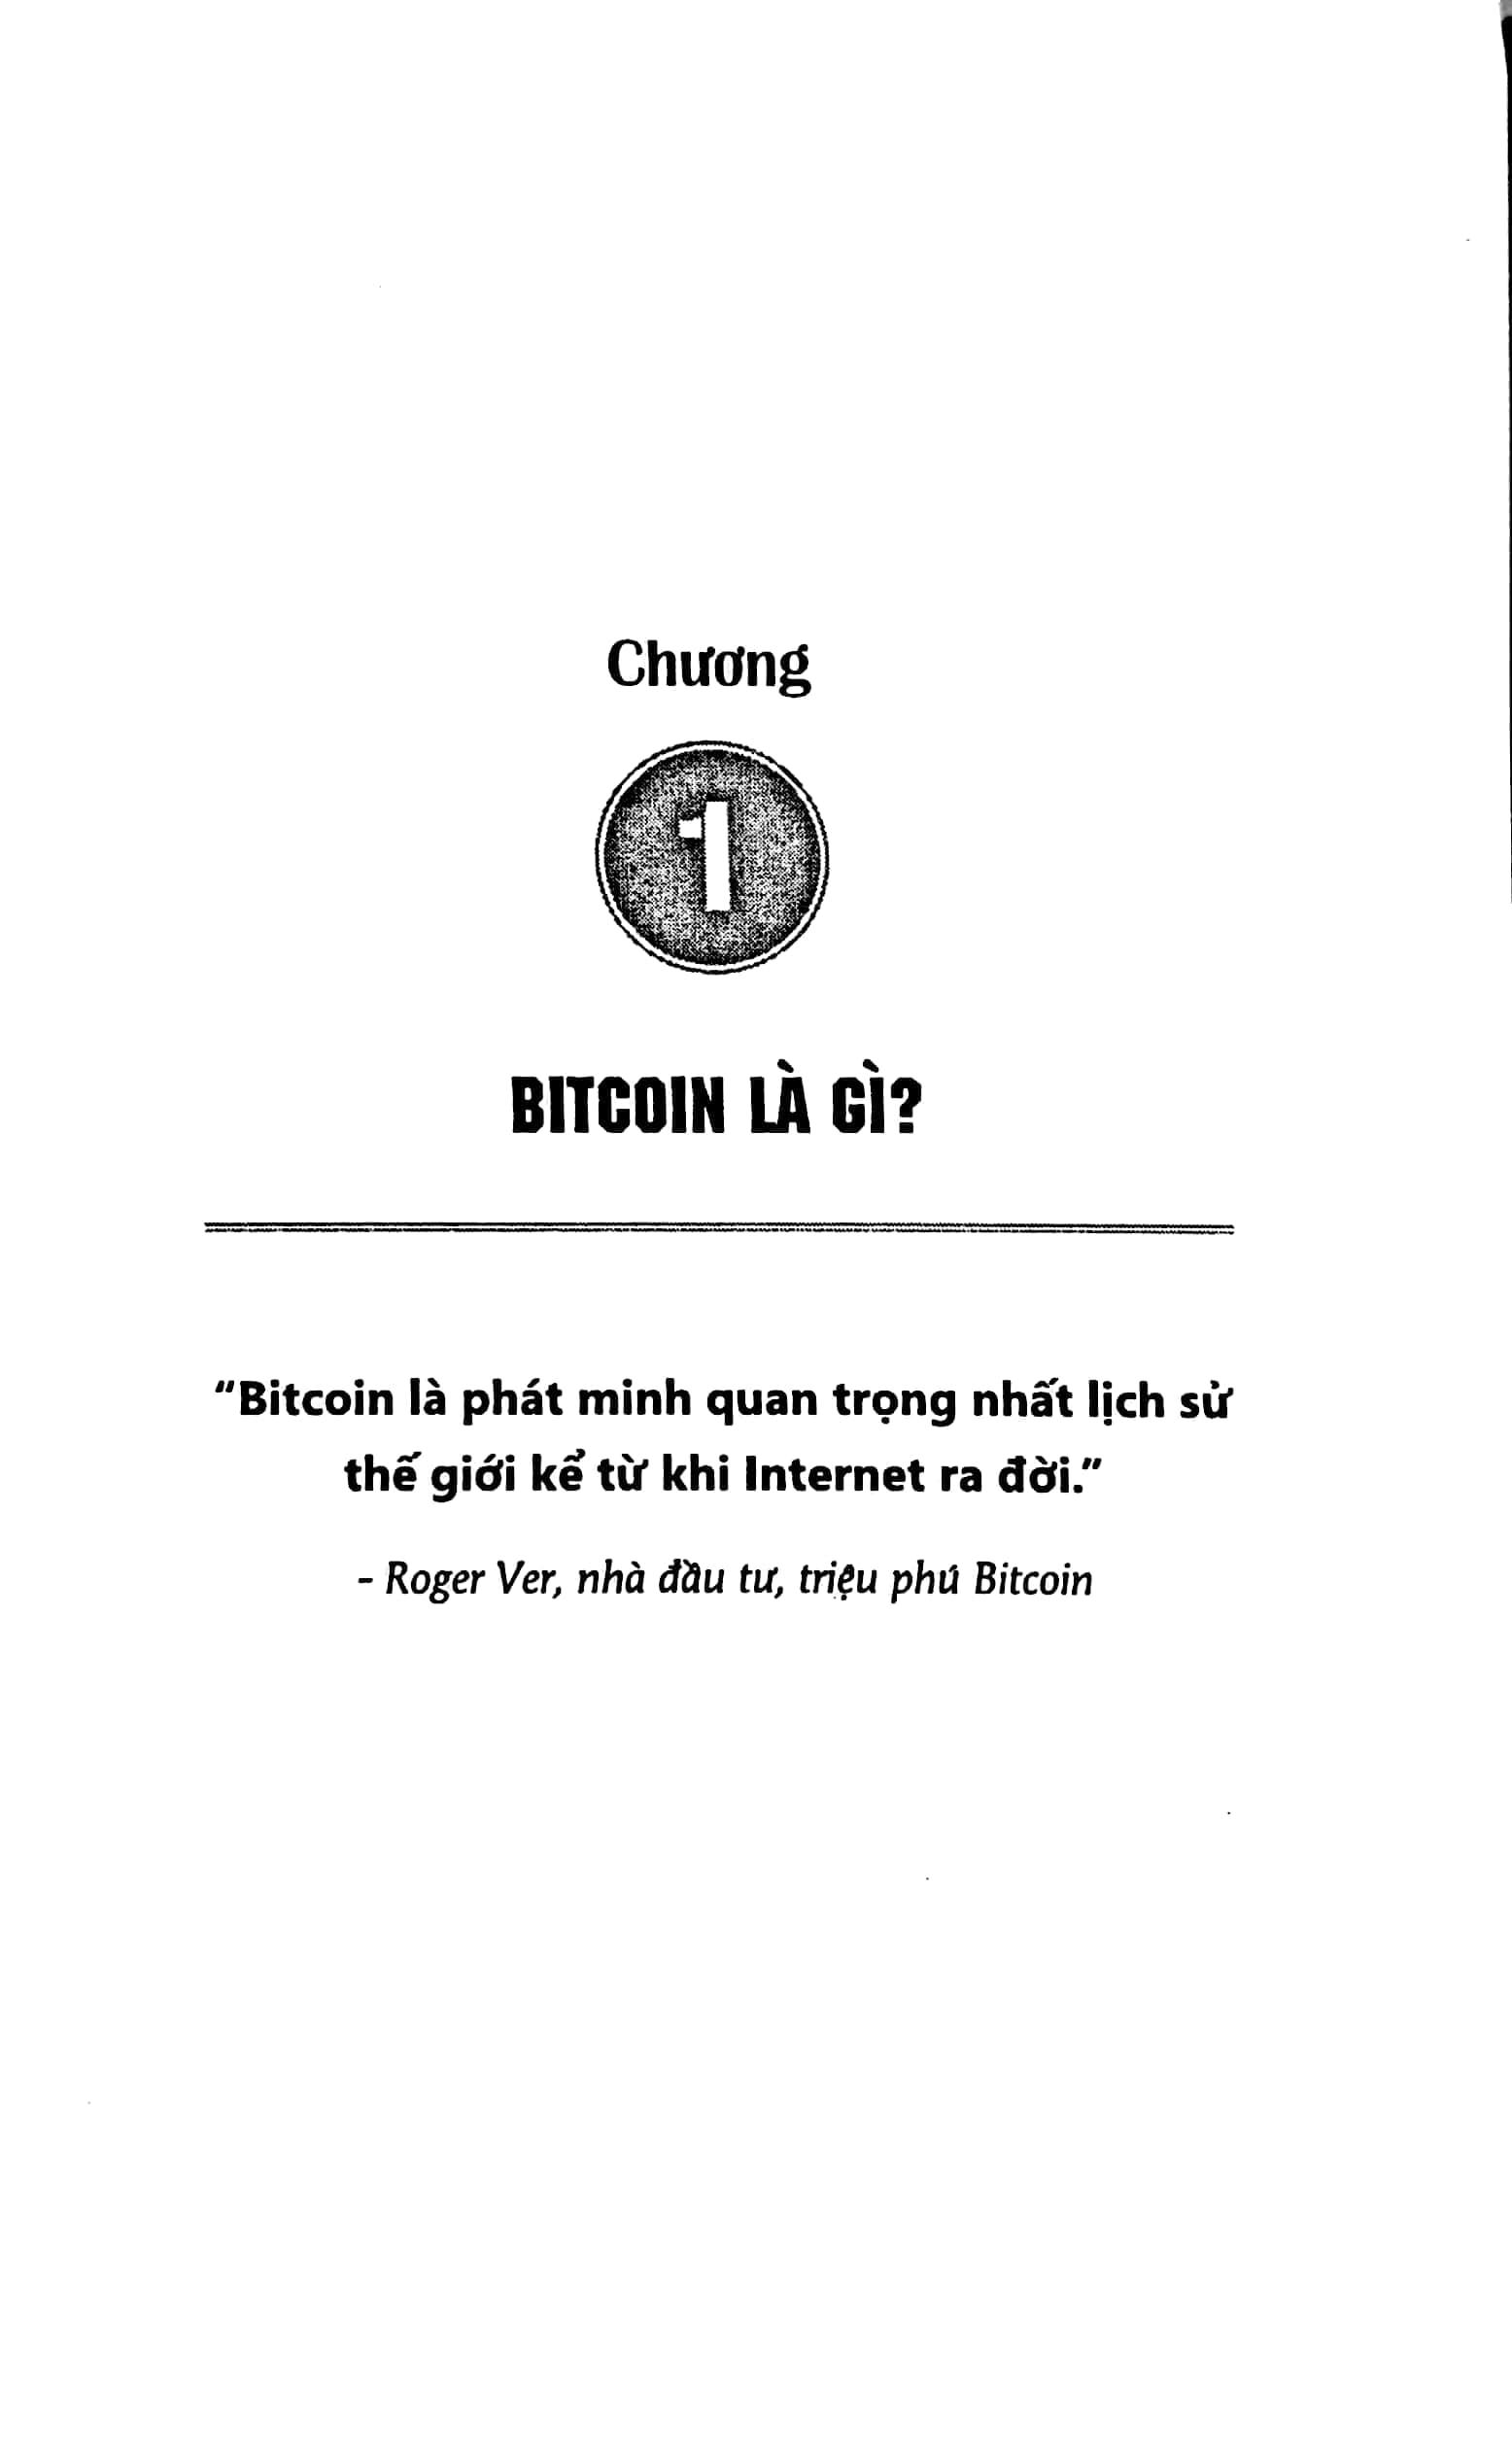 Bitcoin – Bong Bóng Tài Chính Hay Tương Lai Của Tiền Tệ PDF